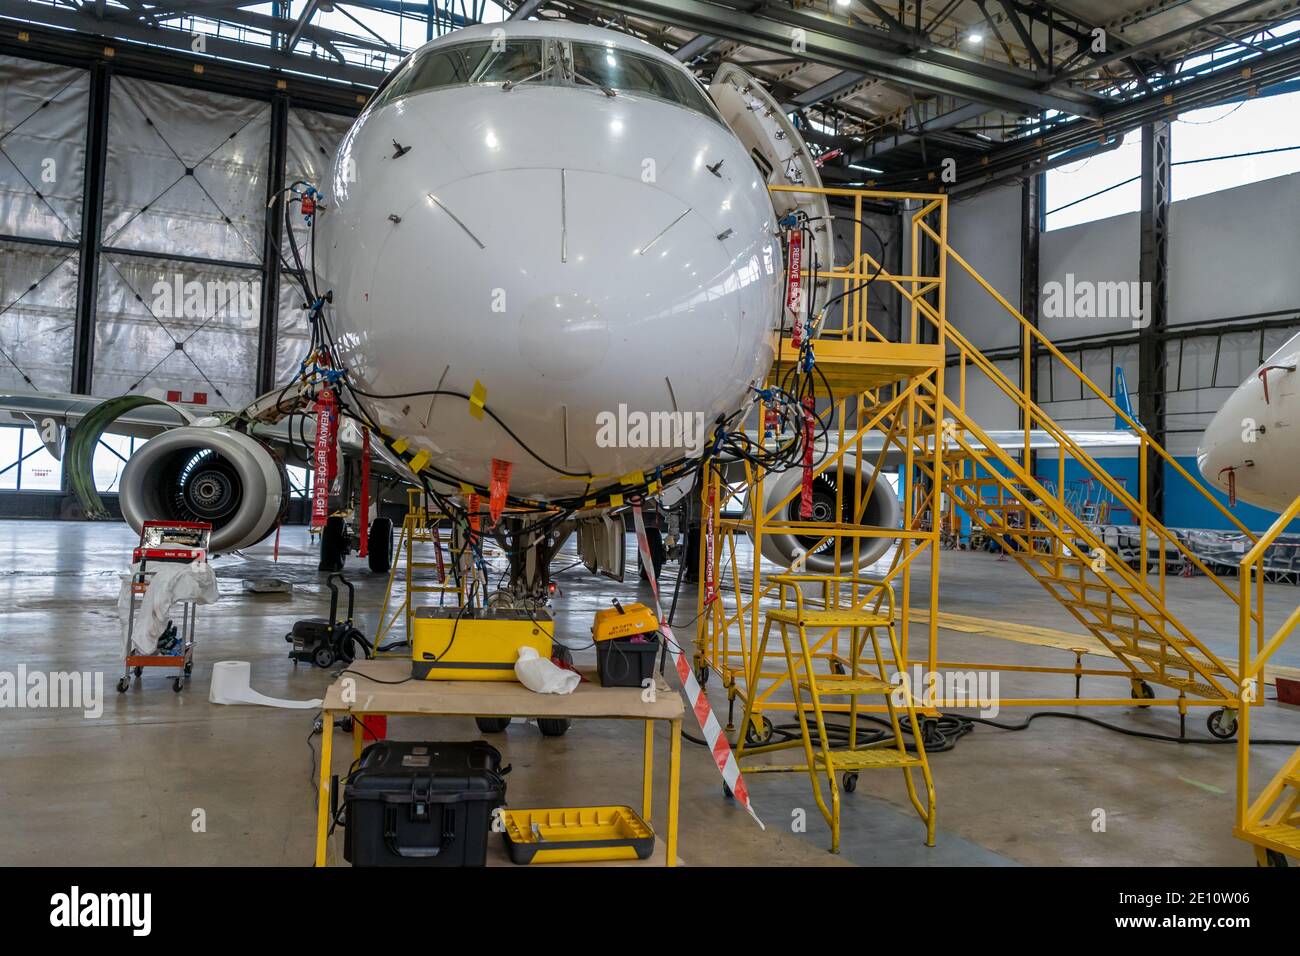 Ucraina, Kiev - 25 novembre 2020: L'aeromobile Embraer E190LR UR-EMD è nell'hangar per la riparazione tecnica e la manutenzione. Diagnostica aerea, sto Foto Stock